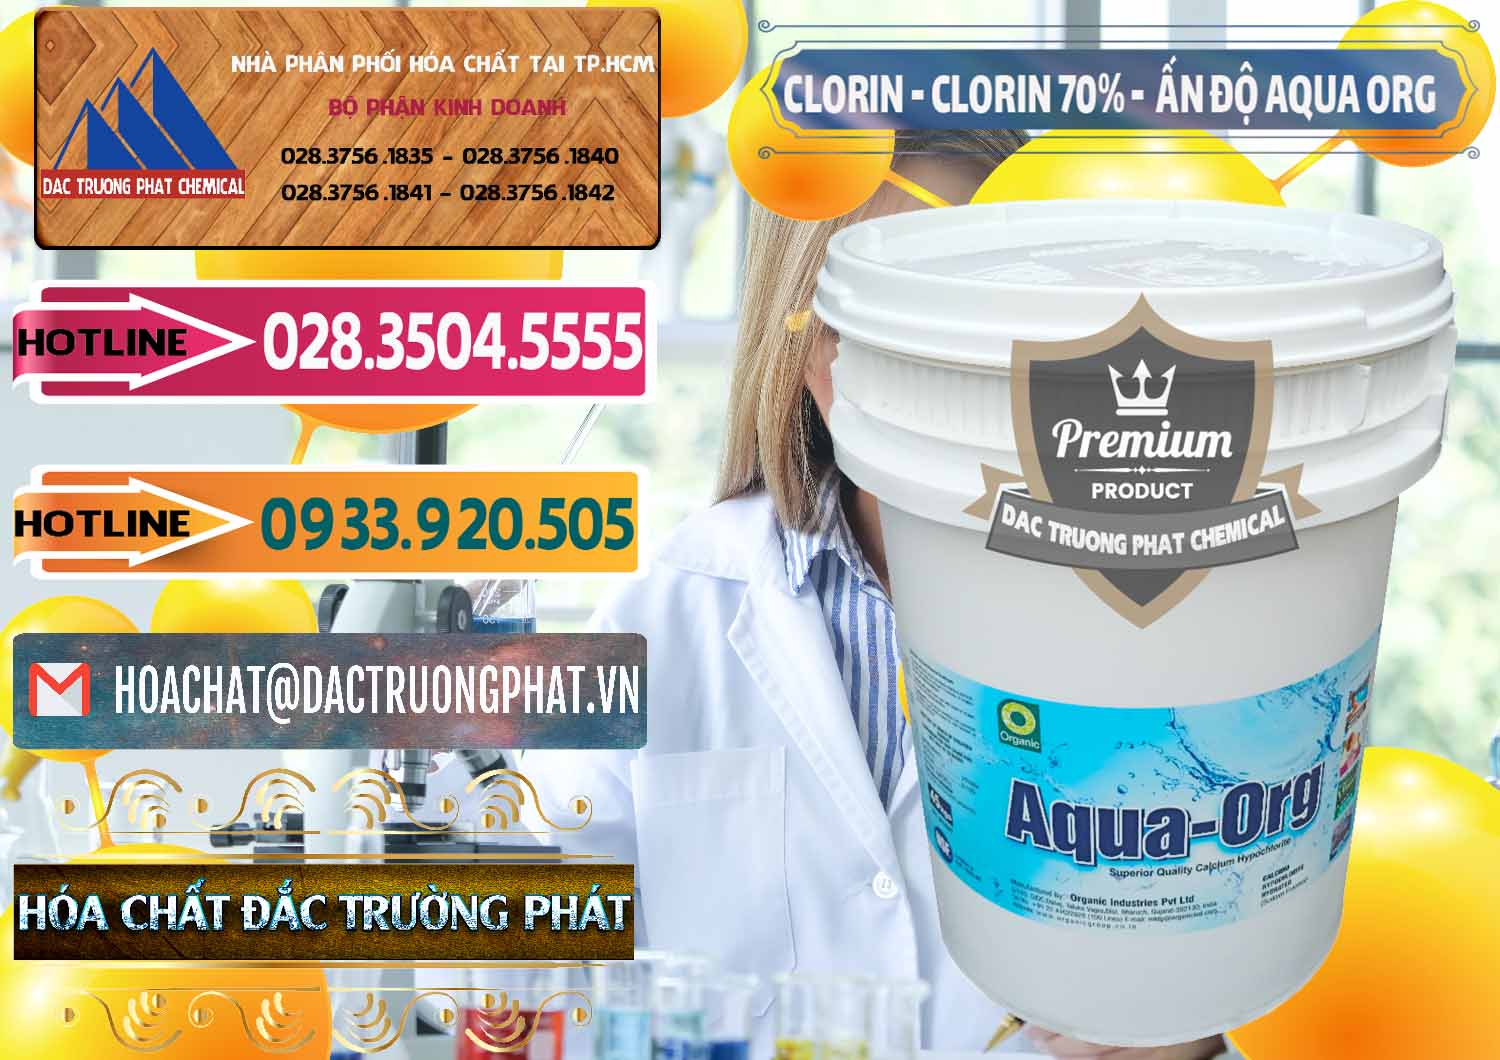 Chuyên bán _ phân phối Chlorine – Clorin Ấn Độ Aqua ORG Organic India - 0051 - Công ty chuyên phân phối ( nhập khẩu ) hóa chất tại TP.HCM - dactruongphat.vn